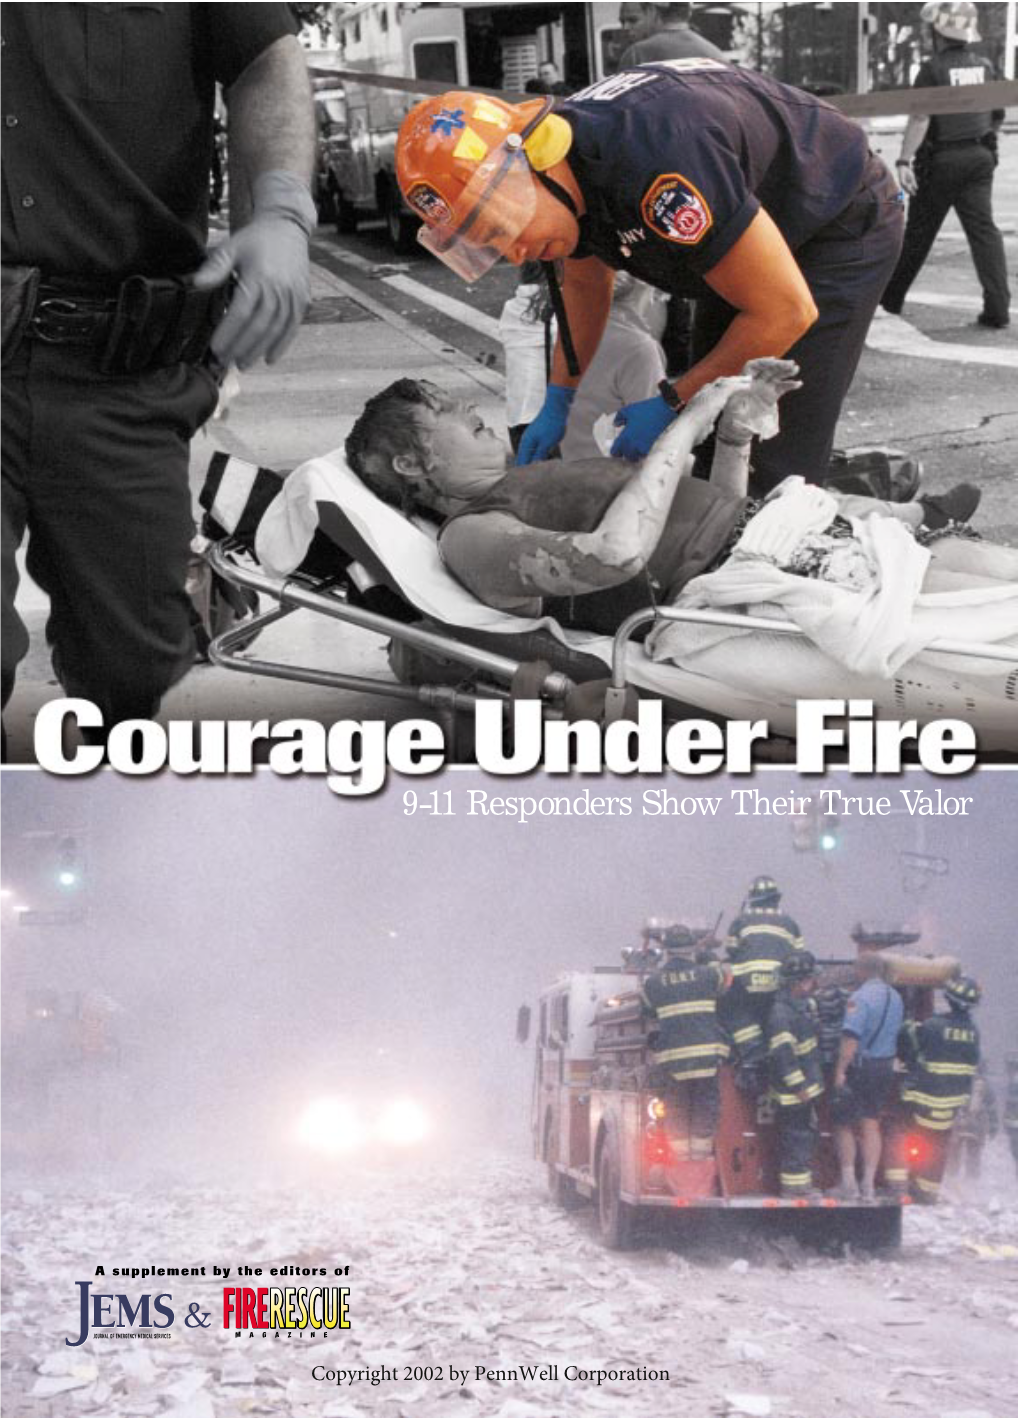 9-11 Responders Show Their True Valor